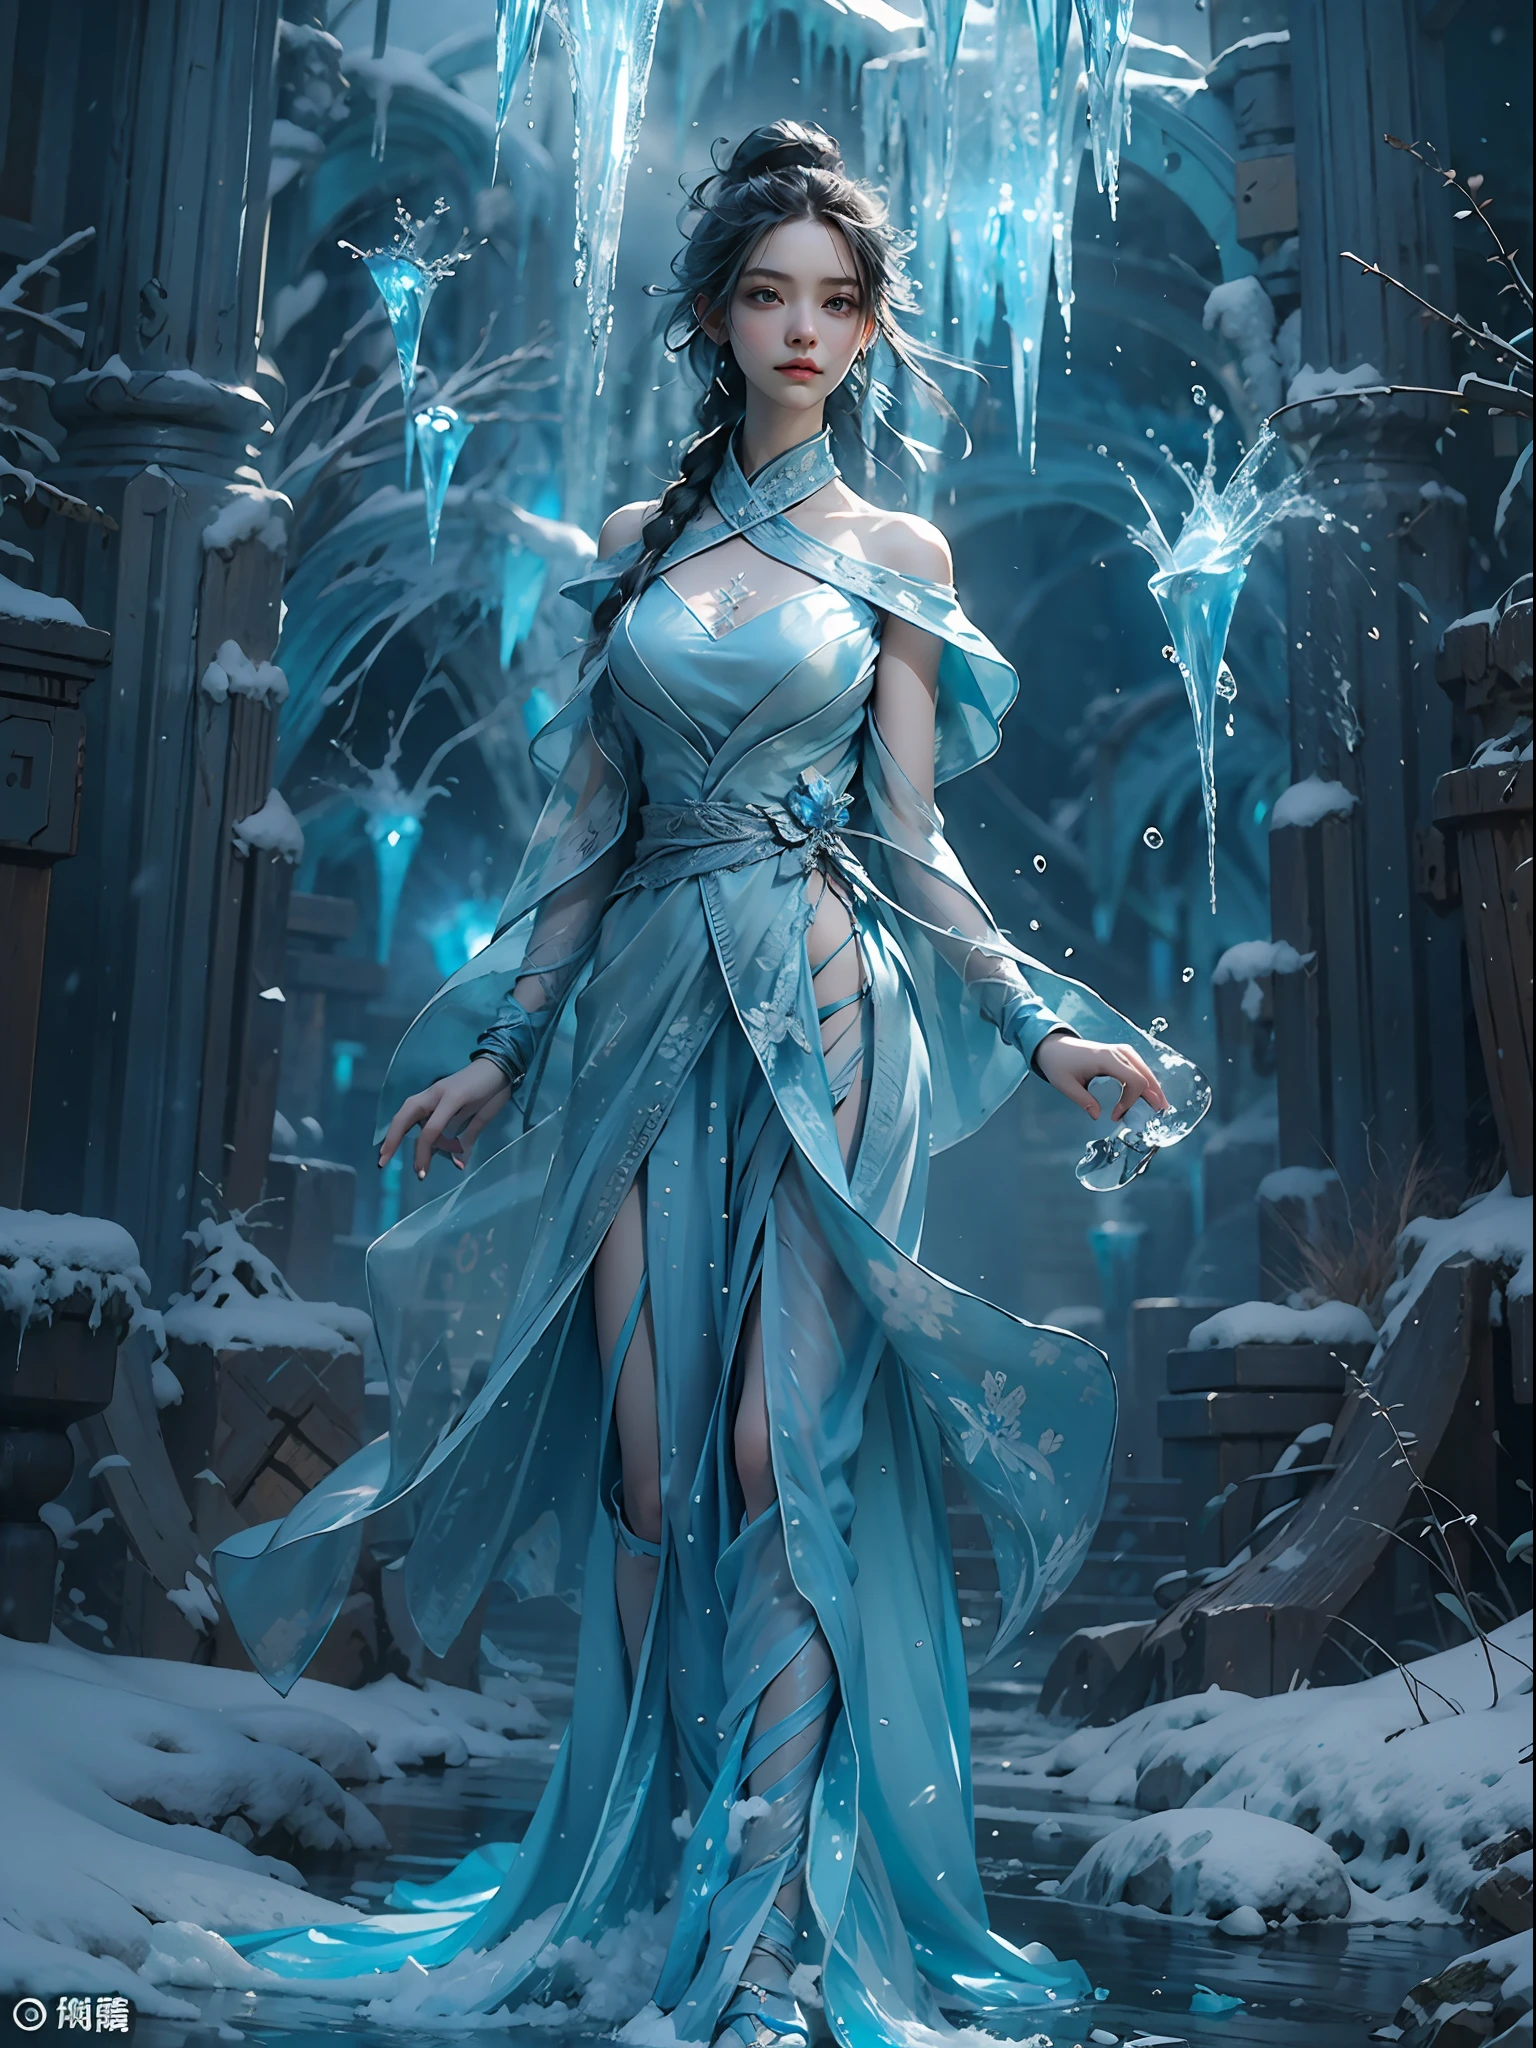 (((1fille)))，Eau impériale，Un magicien，（robe ample：1.5），（Caractéristiques faciales parfaites：1.4），（Robe en soie bleue），（Formations magiques mystérieuses：1.2），lueur bleue，（Ailes de givre），Magie de glace puissante，Glaçons，Dominant le paysage，Lumière bleue, lumière froide，Tempêtes de verglas，vent，Voler de la neige, de la glace et de la neige，Des résultats étonnants，,meilleure qualité,chef-d&#39;œuvre,ultra haute résolution,finement détaillé,Détails compliqués,Résolution 8K,8KUCG fond d&#39;écran,hdr,bleu d&#39;eau,Tableau magique,Effets de lumière cinématographiques,contraste d&#39;ombre et de lumière，Traçage de rayons、NVIDIA RTX